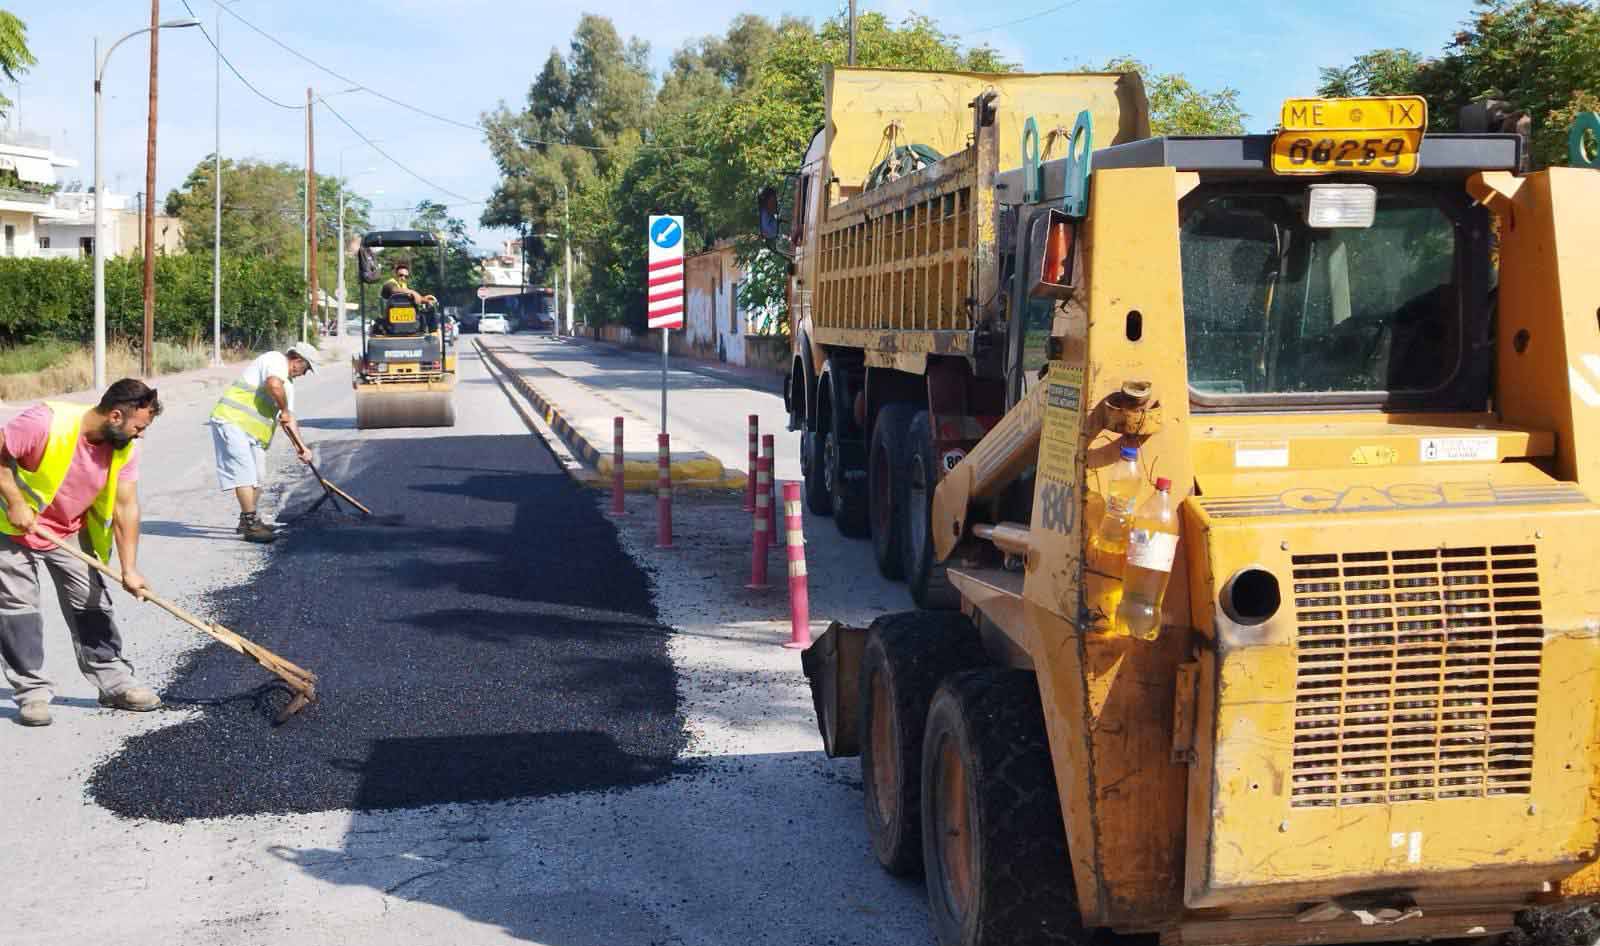 Άργος: Αναγκαίες παρεμβάσεις στο οδικό δίκτυο – Έρχονται βελτιώσεις σε αγροτική και αστική οδοποιία